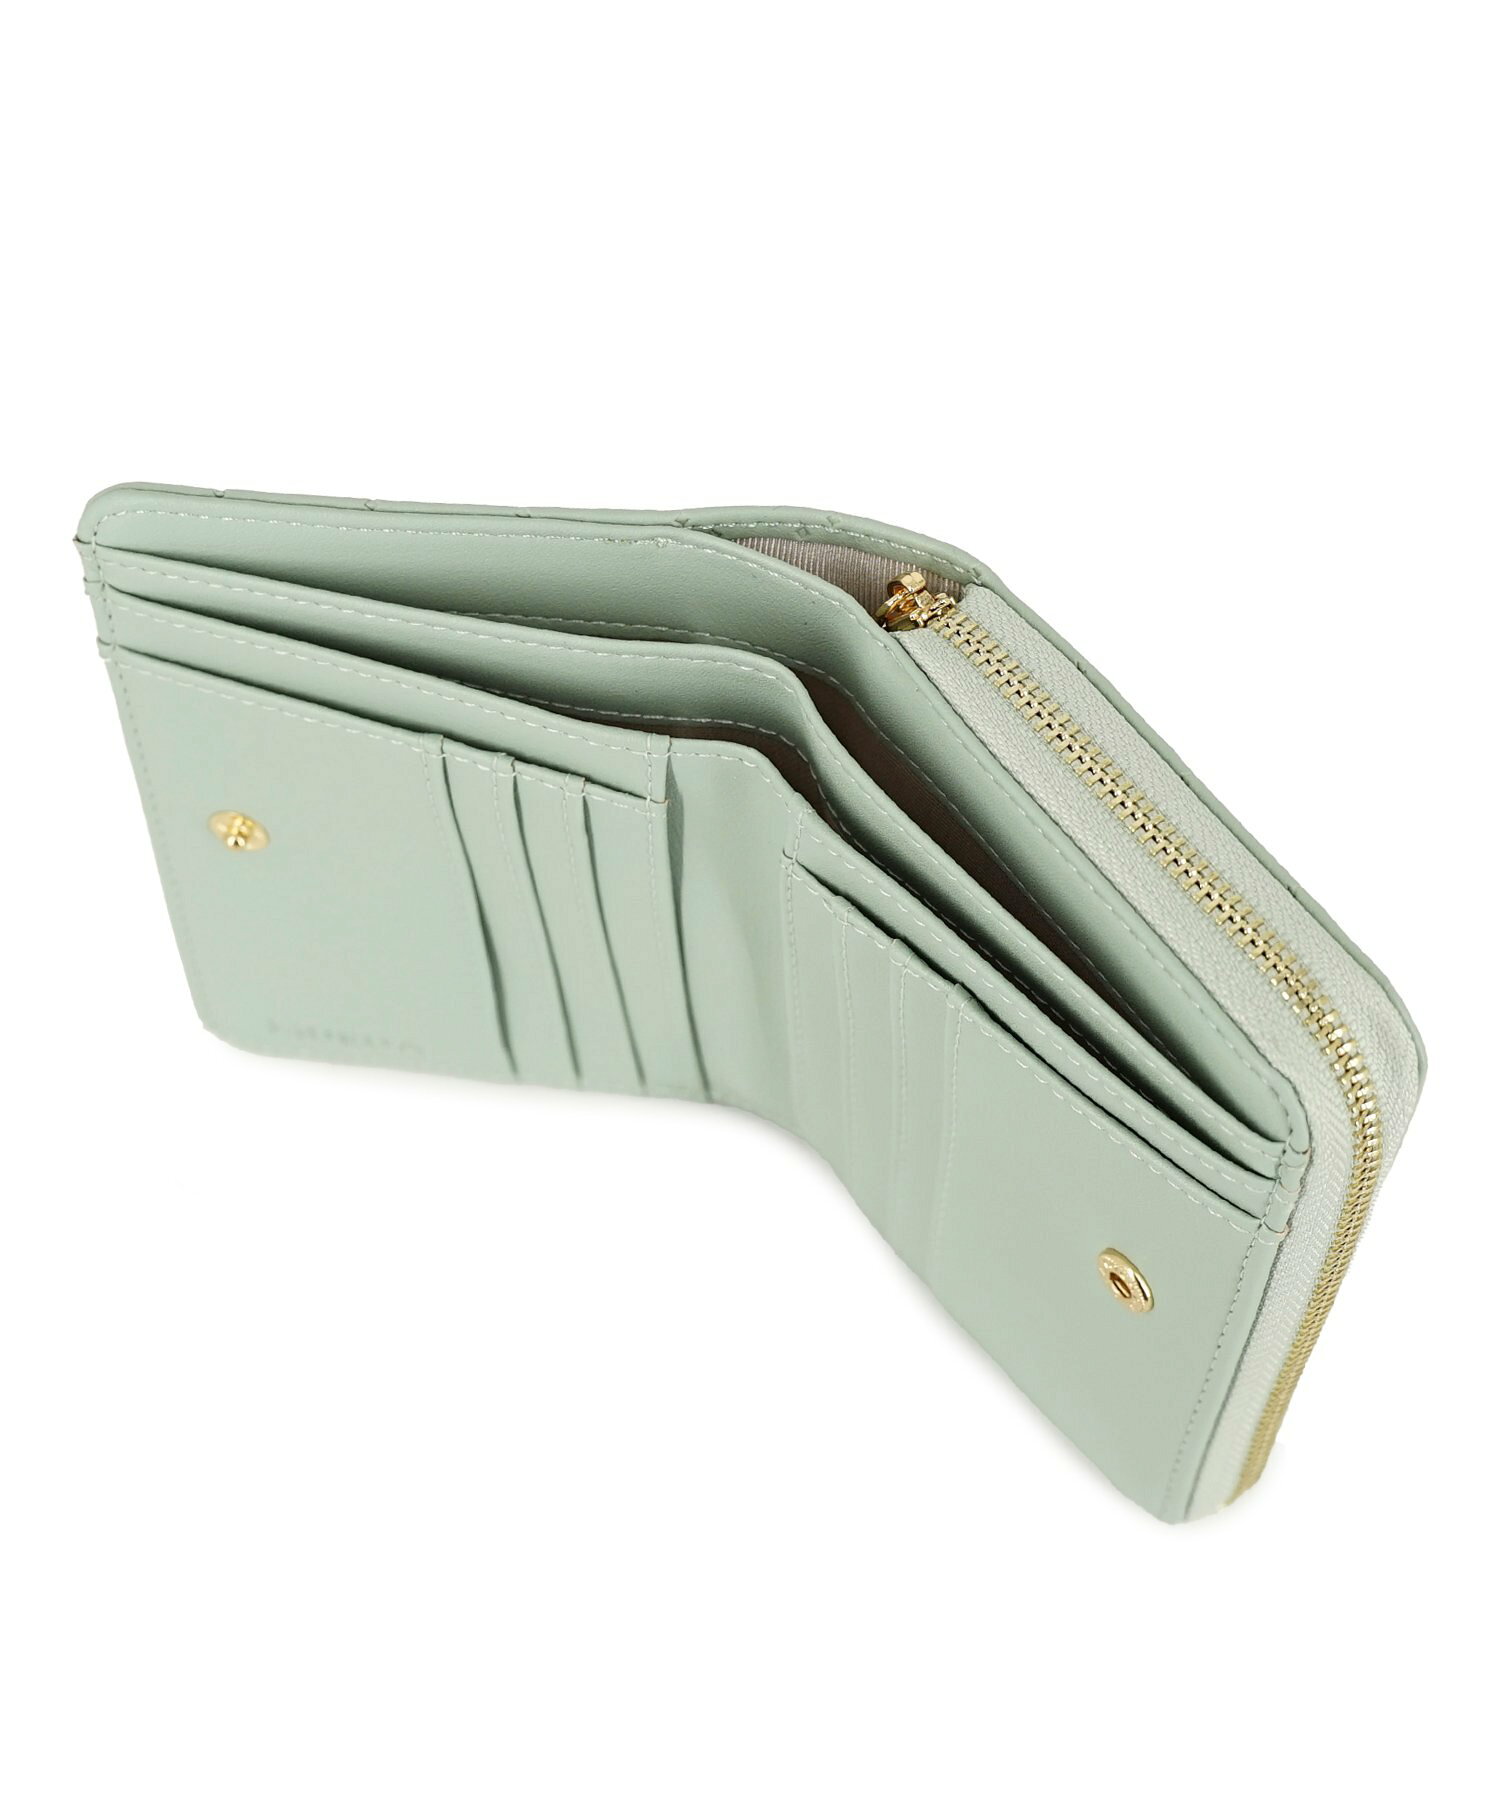 MURエンボスラウンドファスナー二つ折り財布 コンパクト財布 MR-W1213